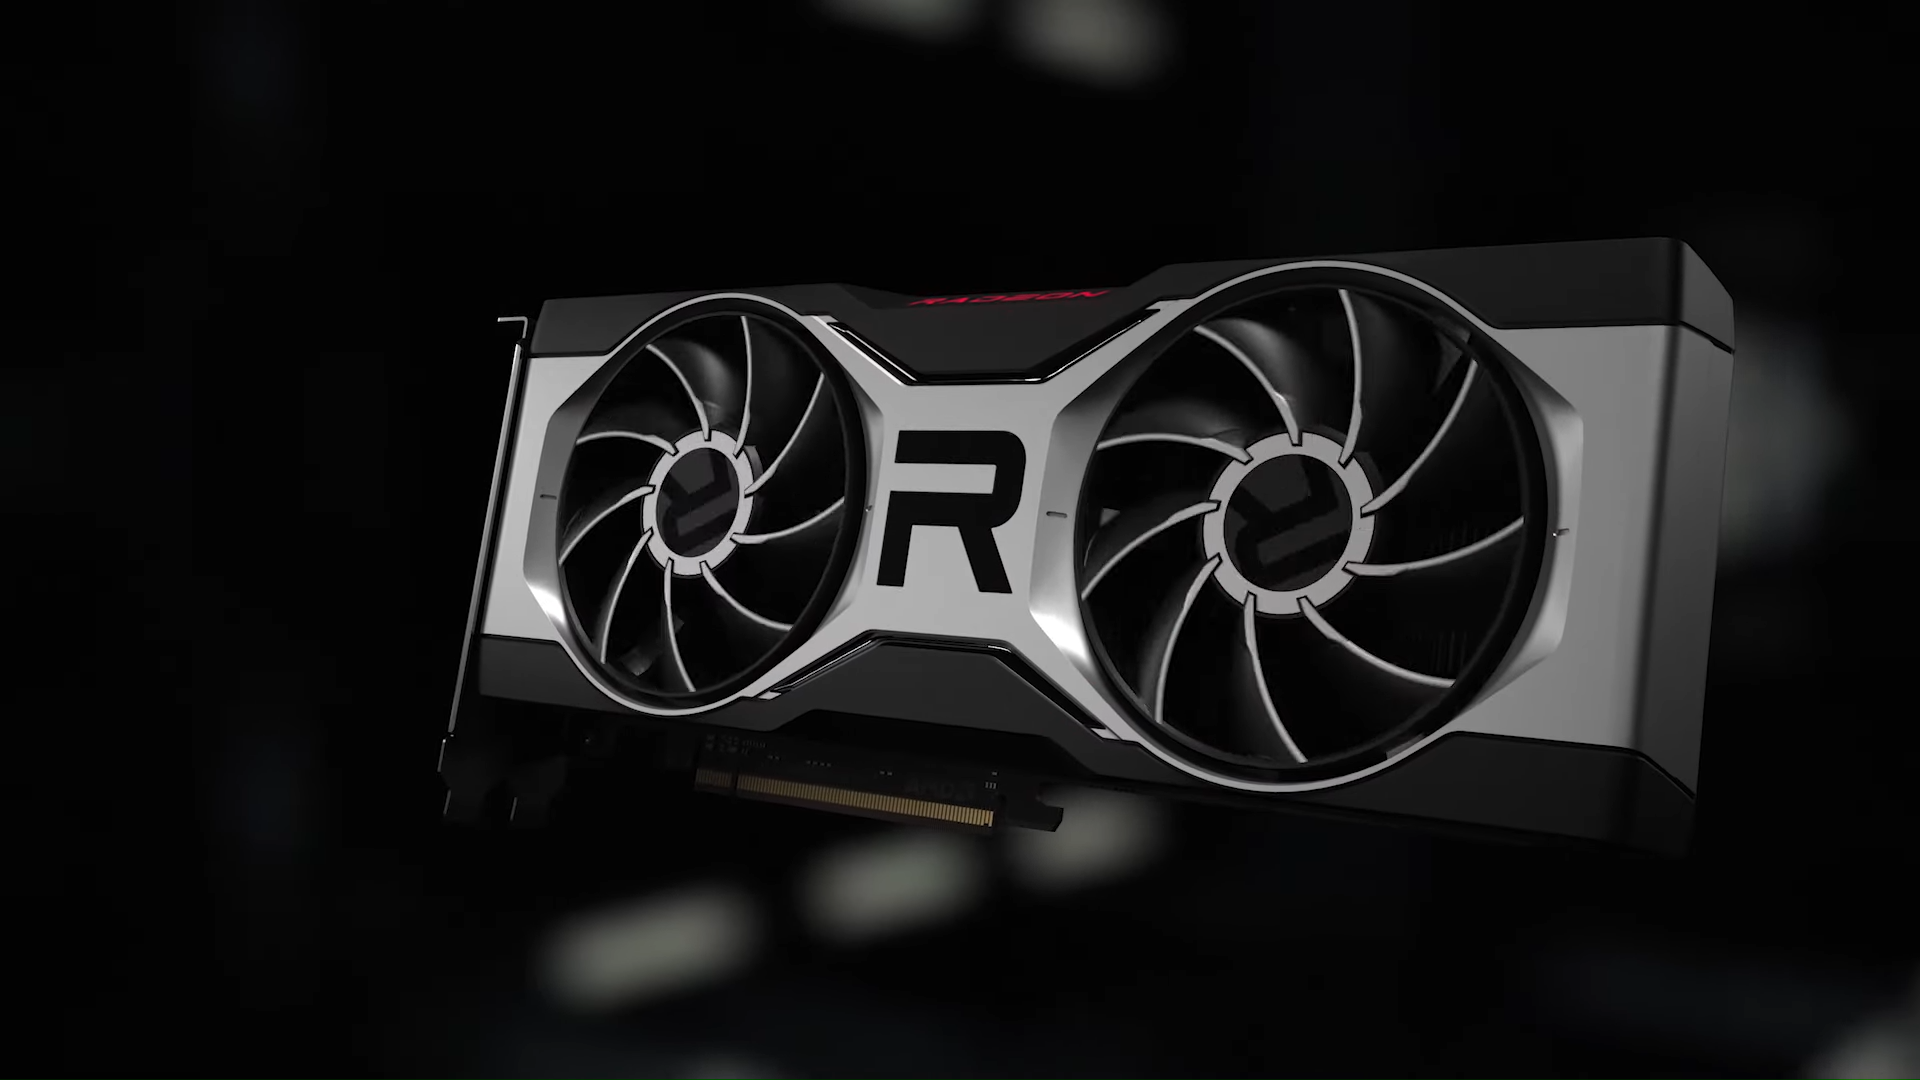 Immagine pubblicata in relazione al seguente contenuto: AMD annuncia la Radeon RX 6700 XT: foto, specifiche, prezzo e data di lancio | Nome immagine: news31762_AMD-Radeon-RX-6700-XT_5.png